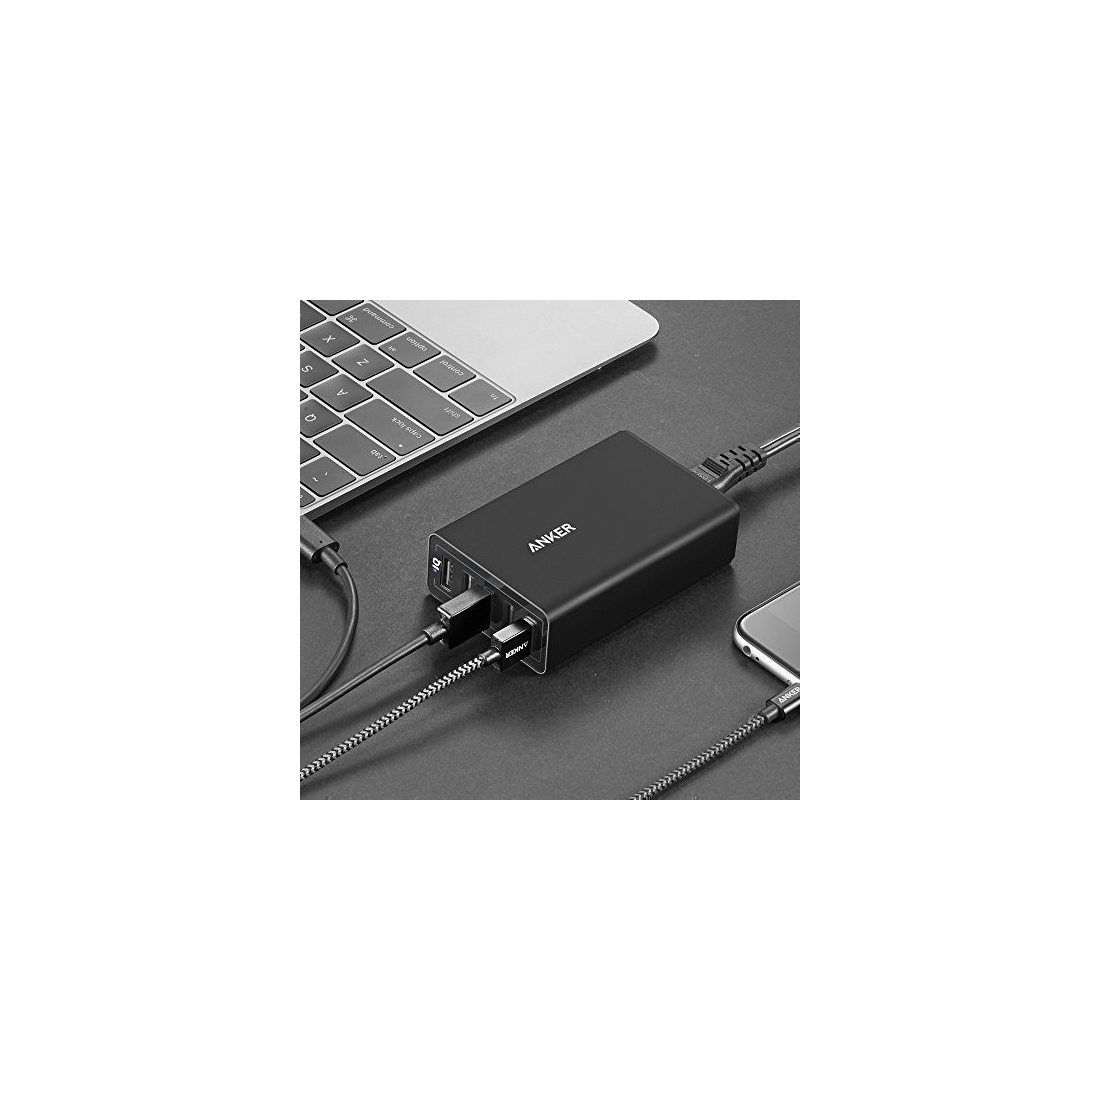 Ancre Power Chargeur Port 40 W de 5 Port USB Multi Port USB Chargeur pour iPhone 6/6 Plus, iPad Air 2/Mini 3, Galaxy S6/S6 Ed